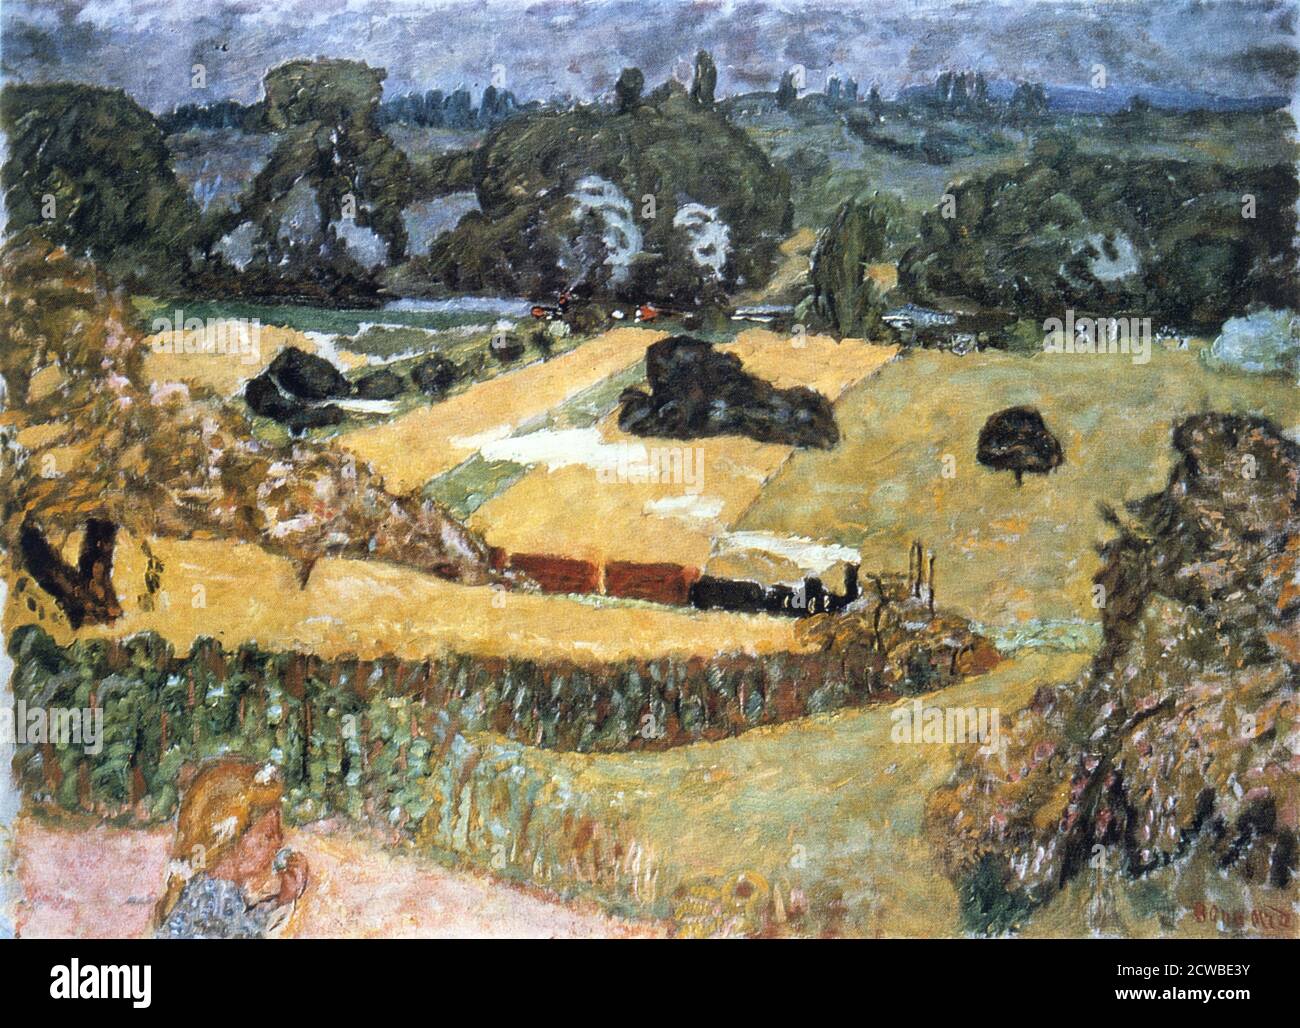 Train and Bardes', (Landschaft mit Güterzug), 1909. Künstler: Pierre Bonnard. Bonnard war ein französischer Maler, Illustrator und Grafiker, bekannt für die stilisierten dekorativen Qualitäten seiner Gemälde und seine kühne Verwendung von Farbe. Er war Gründungsmitglied der postimpressionistischen Gruppe der Avantgarde-Maler Les Nabis. Stockfoto